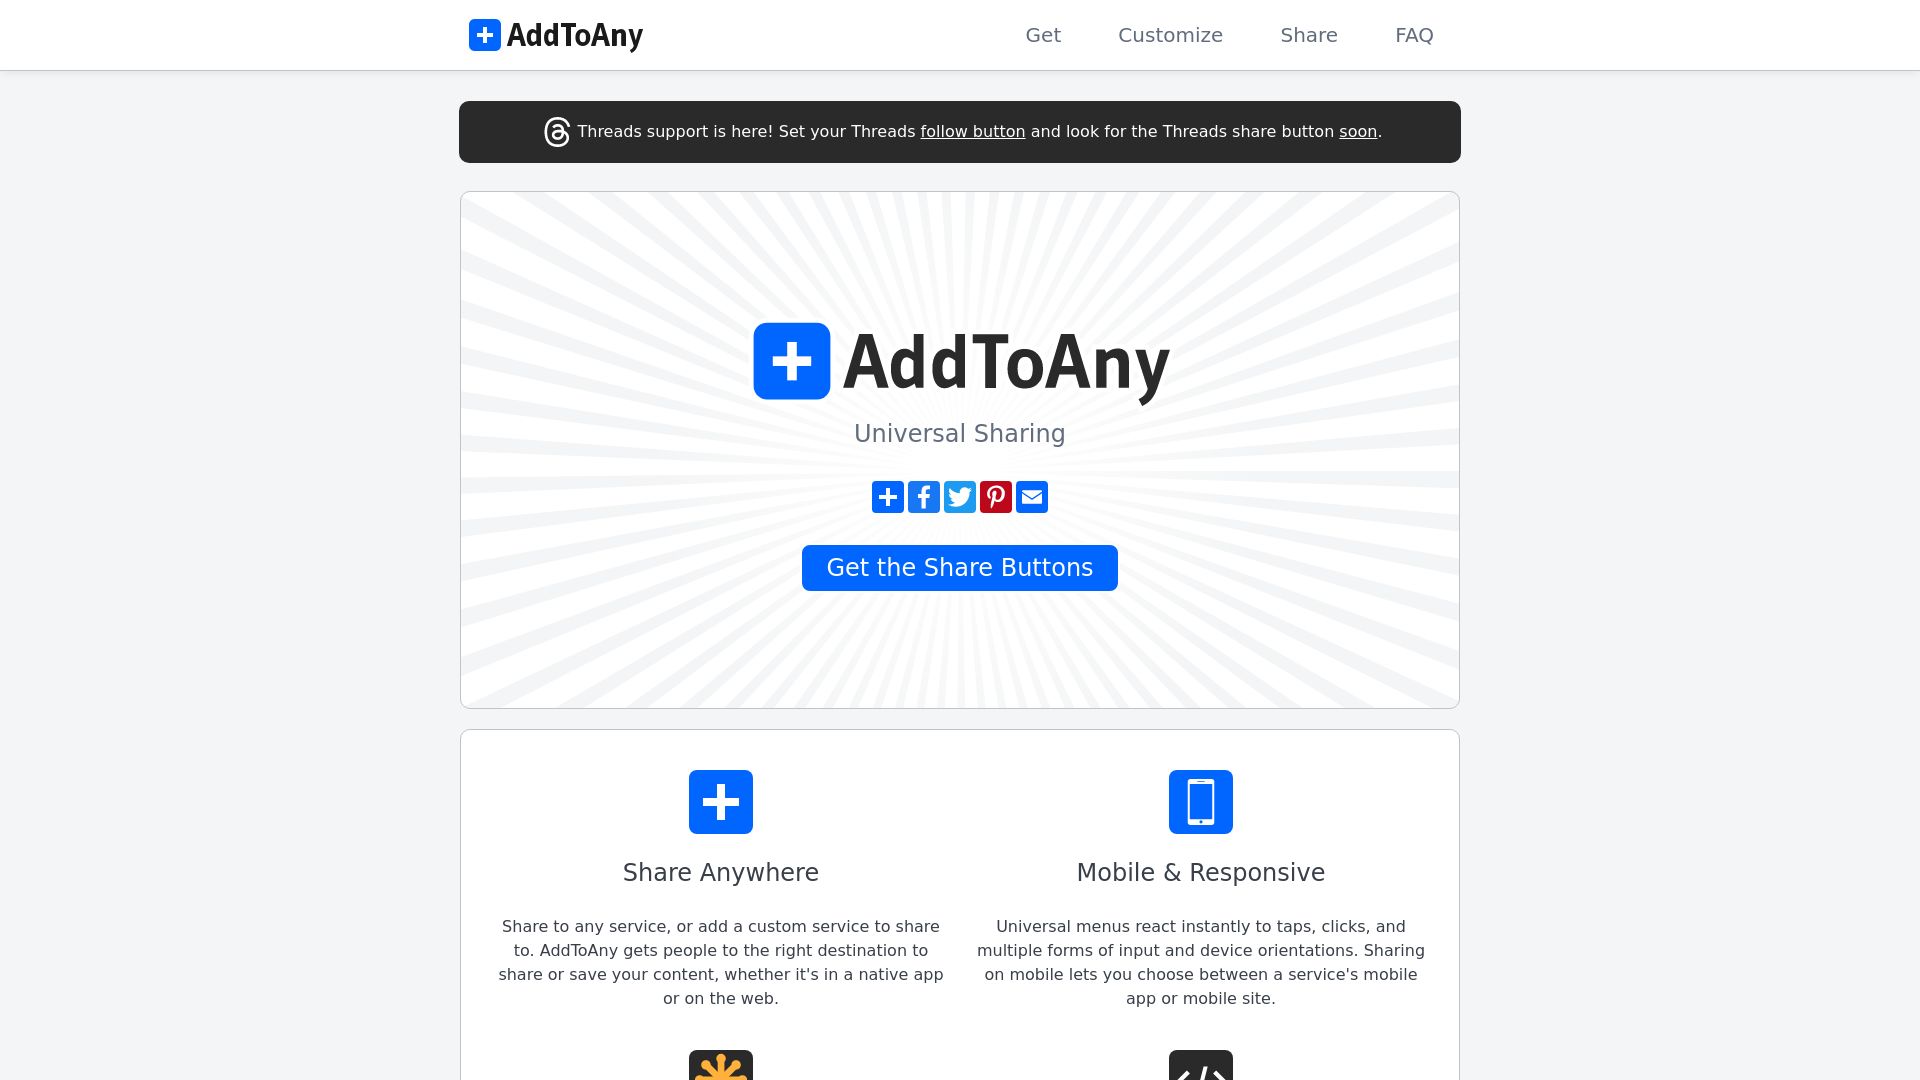 Website status addtoany.com is   ONLINE